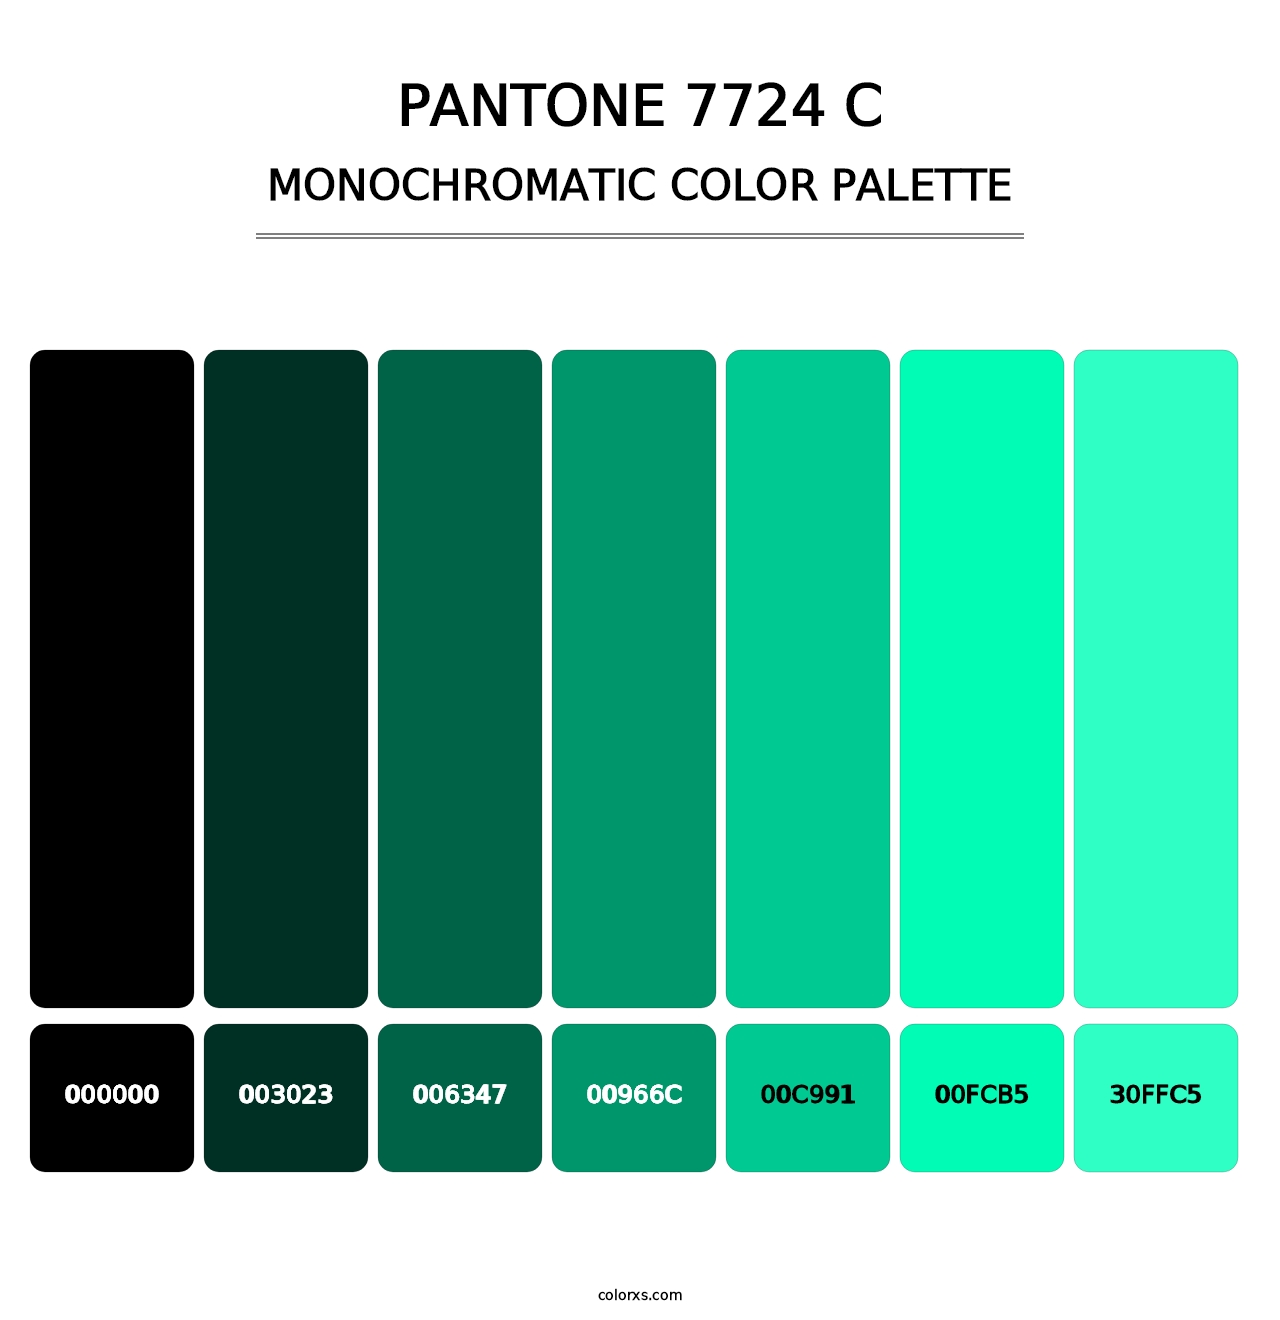 PANTONE 7724 C - Monochromatic Color Palette